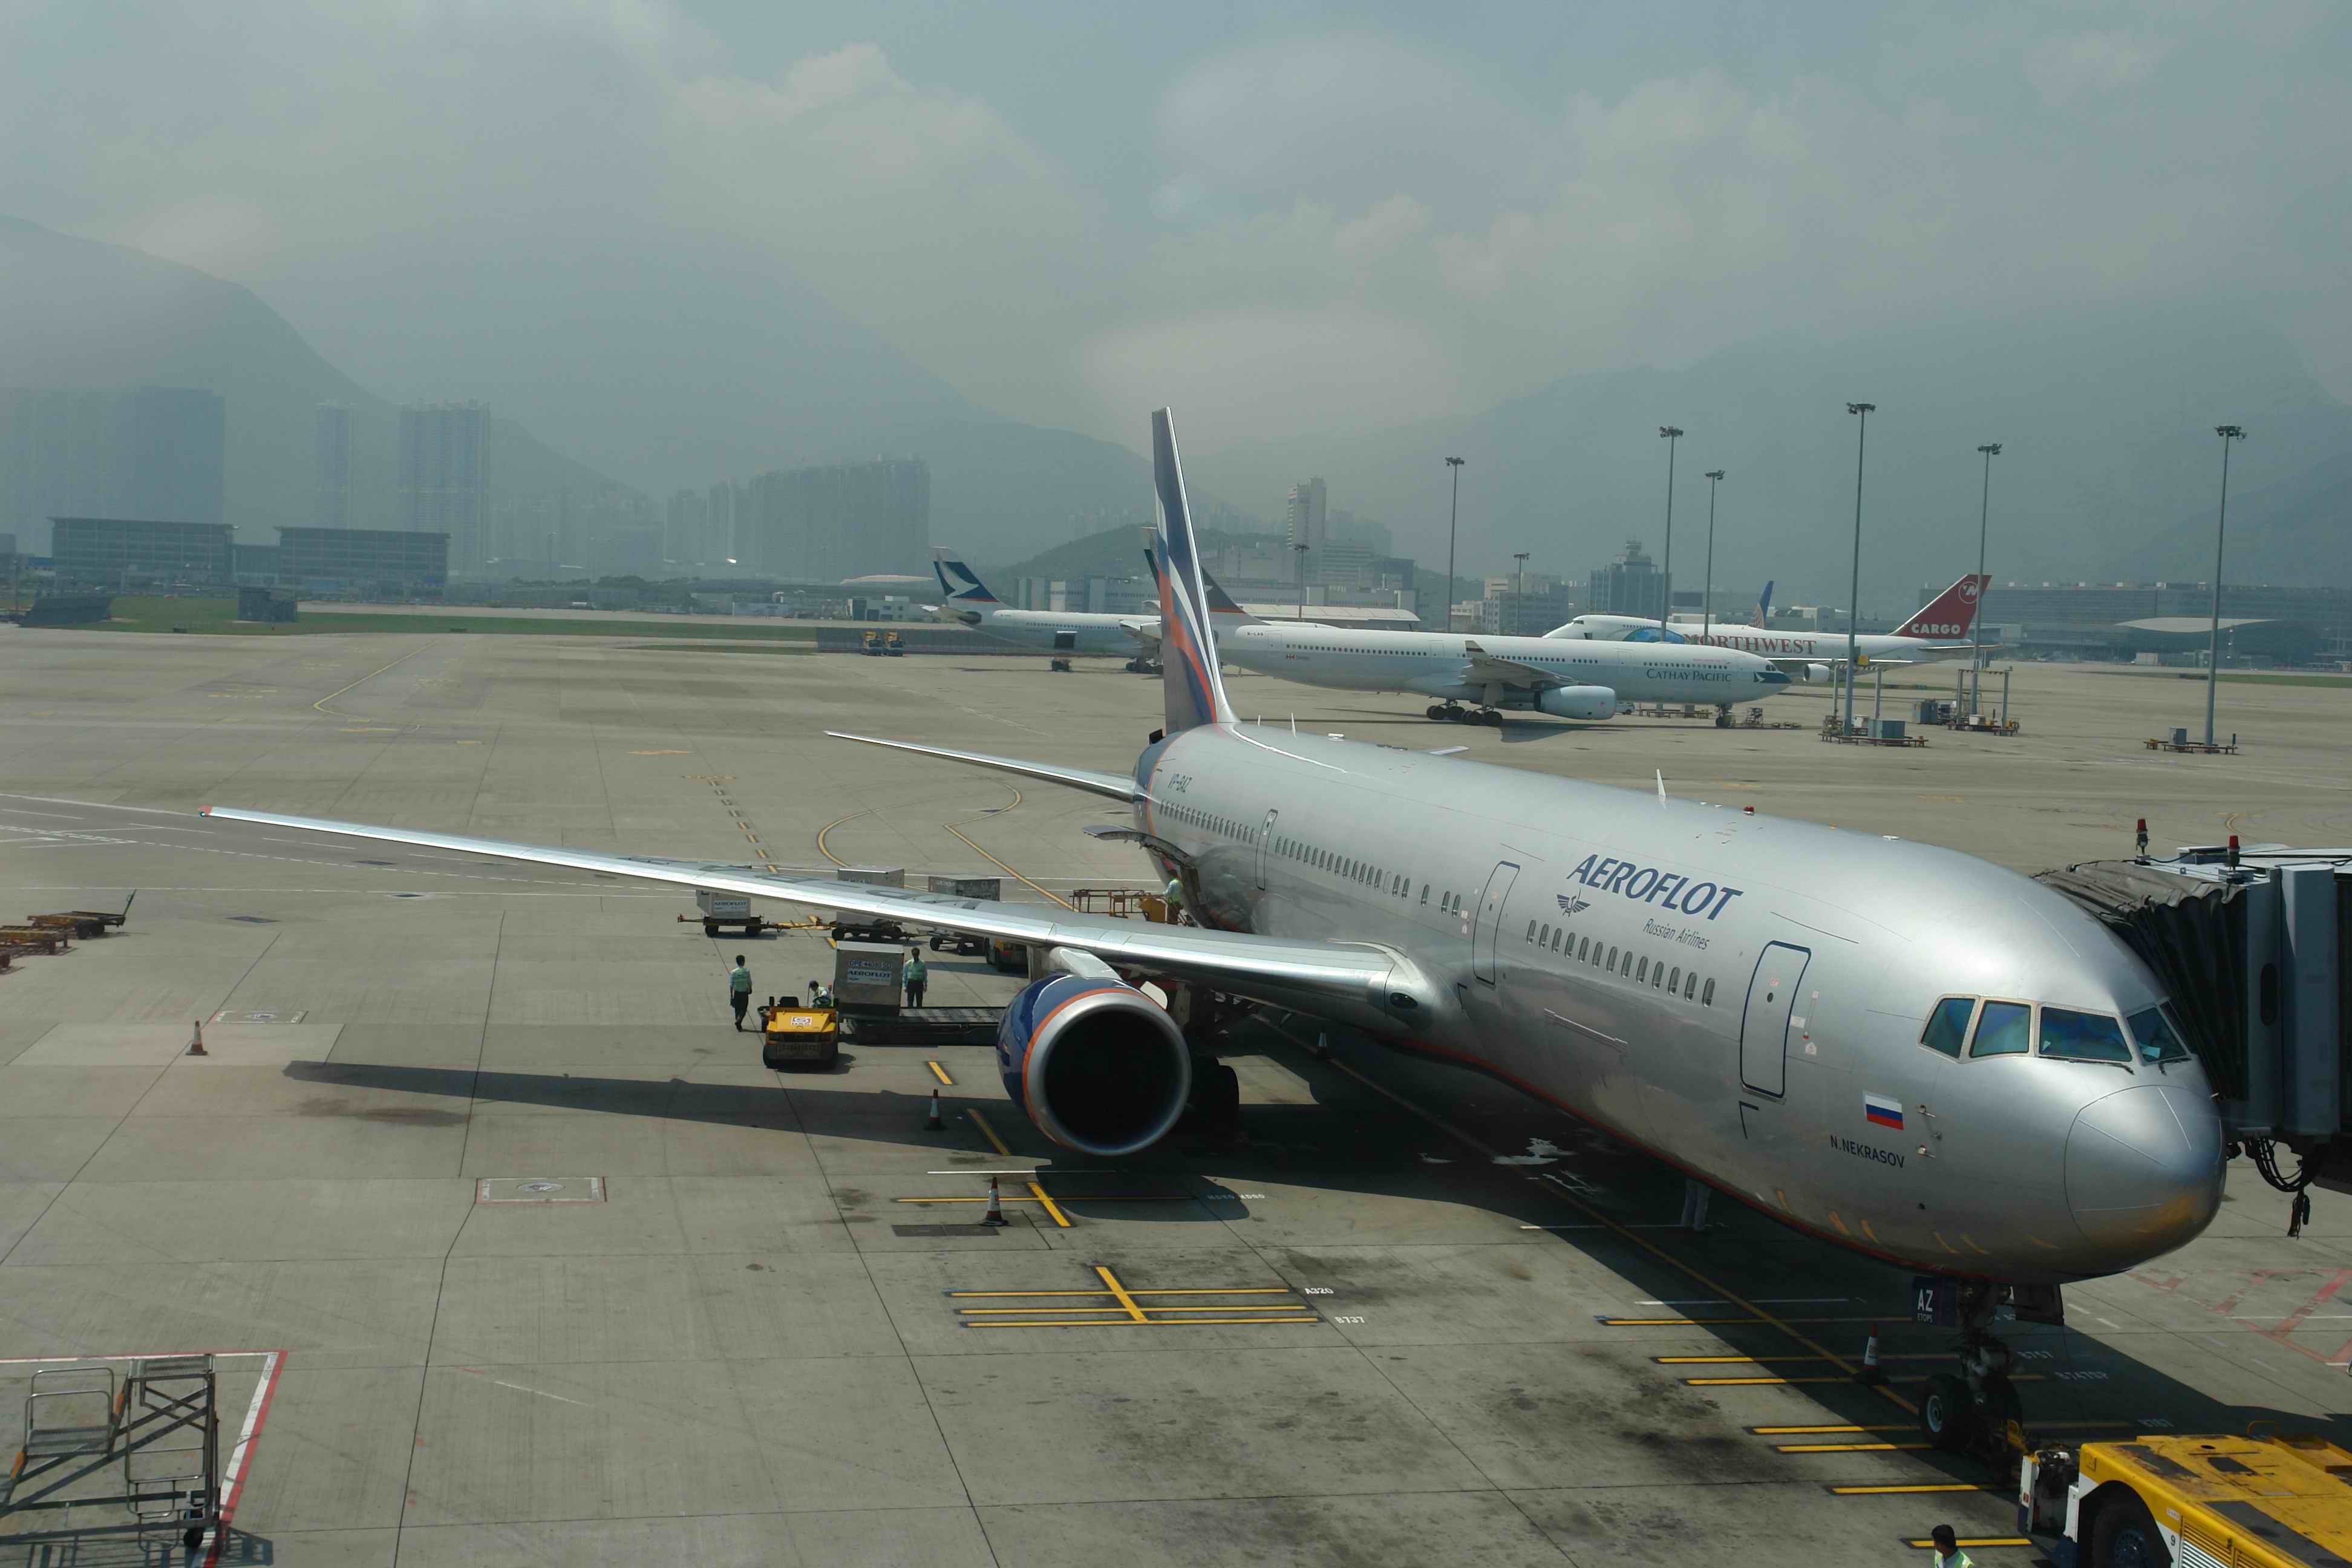 Hong Kong Airport